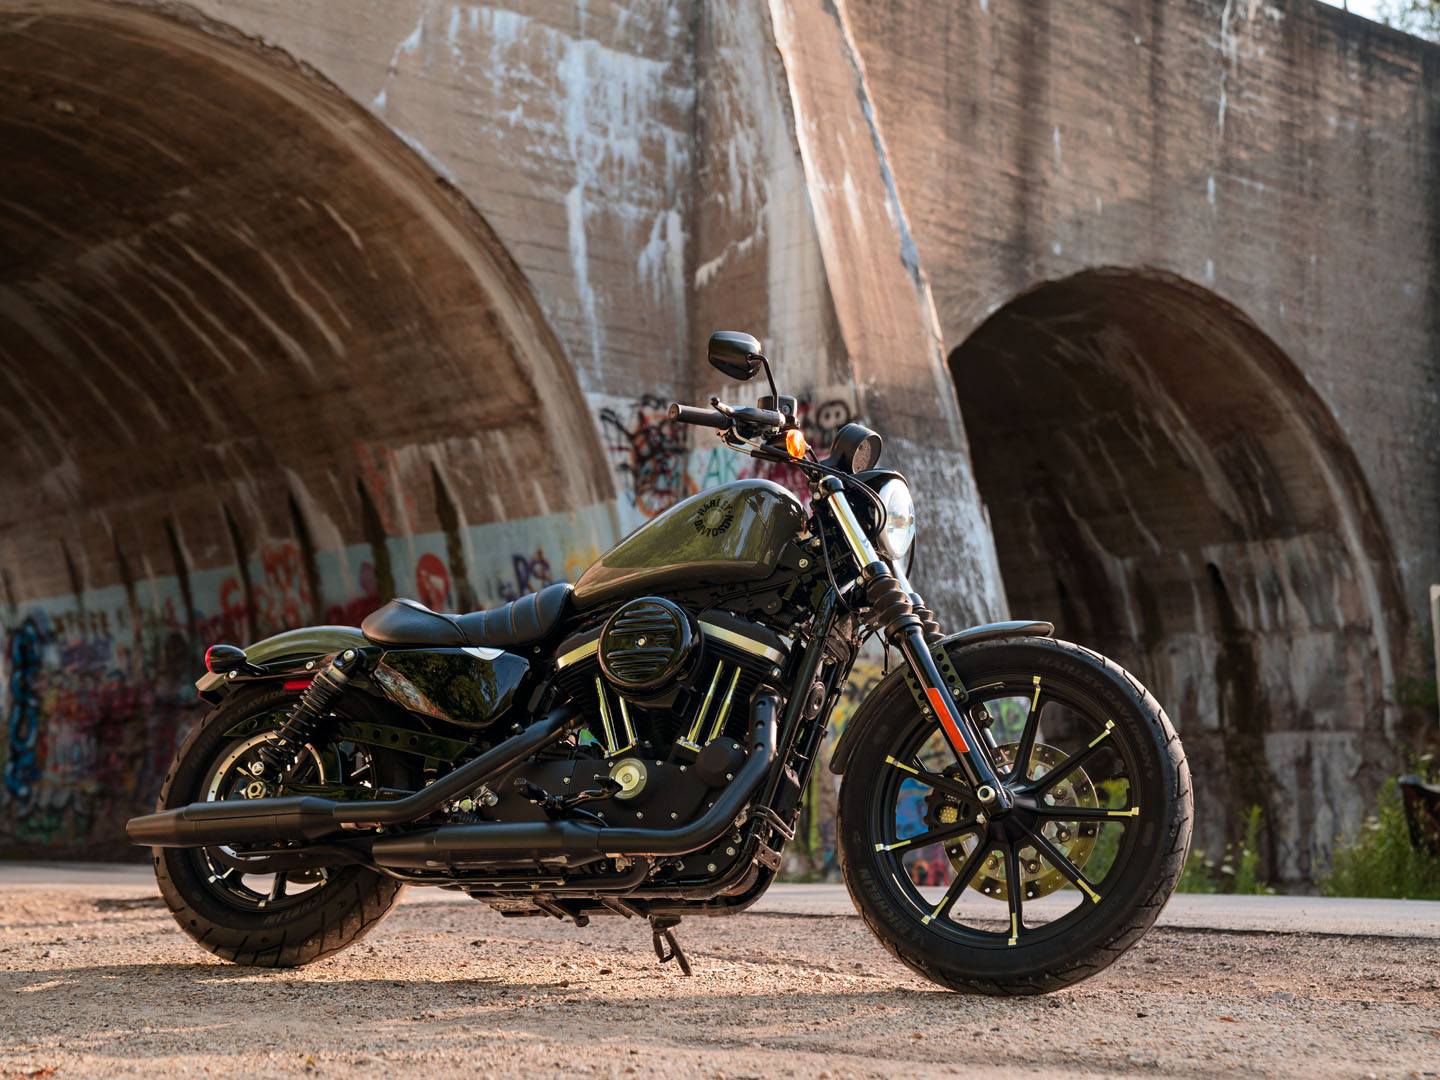 2021 Harley-Davidson Iron 883™ in Baldwin Park, California - Photo 6